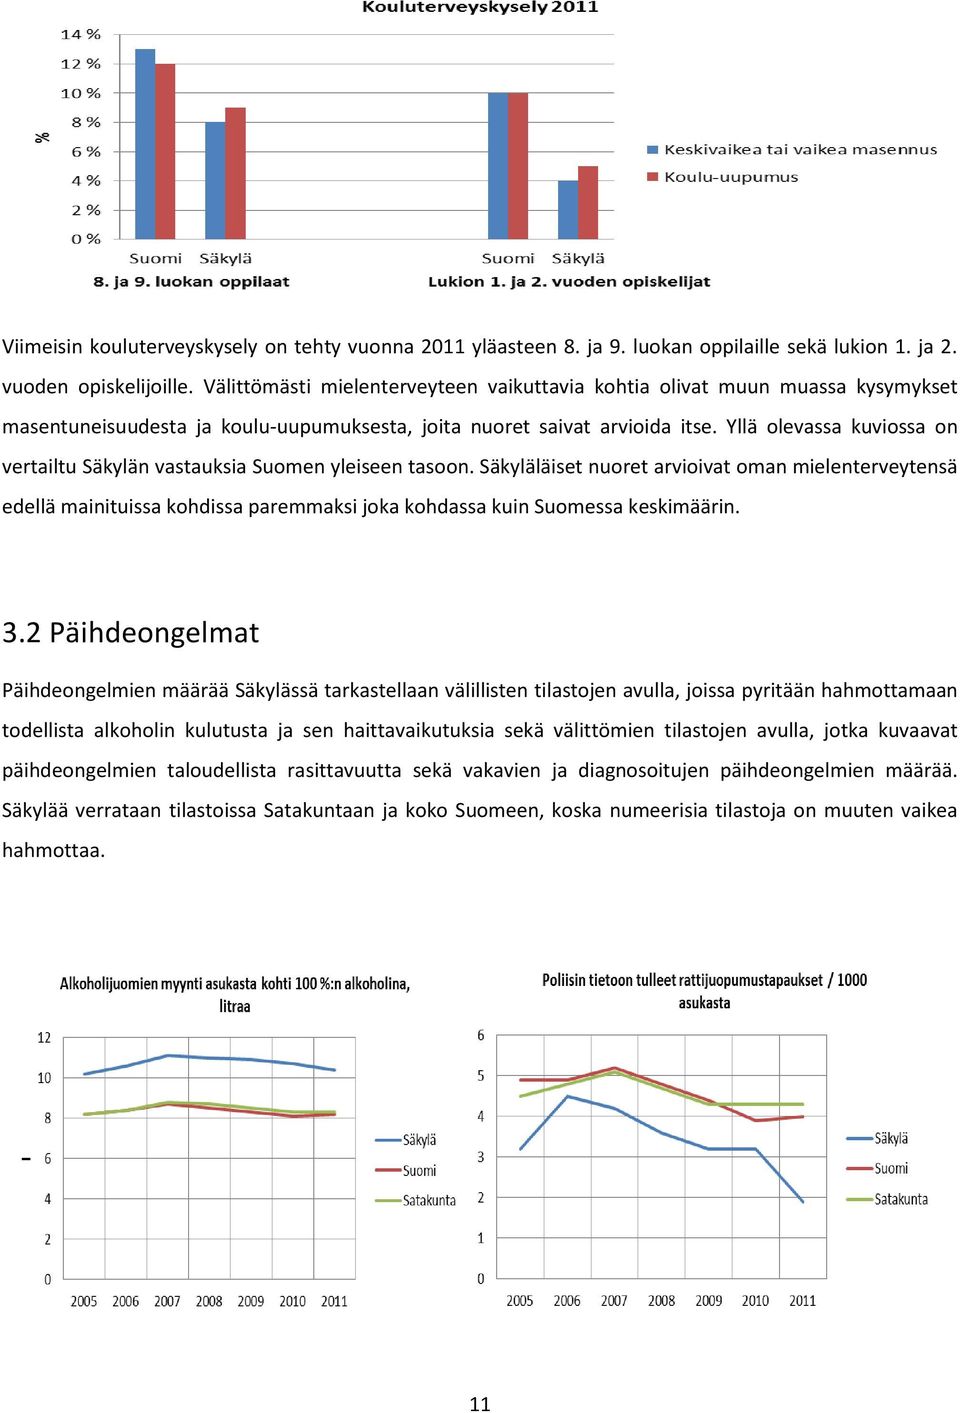 Yllä olevassa kuviossa on vertailtu Säkylän vastauksia Suomen yleiseen tasoon.